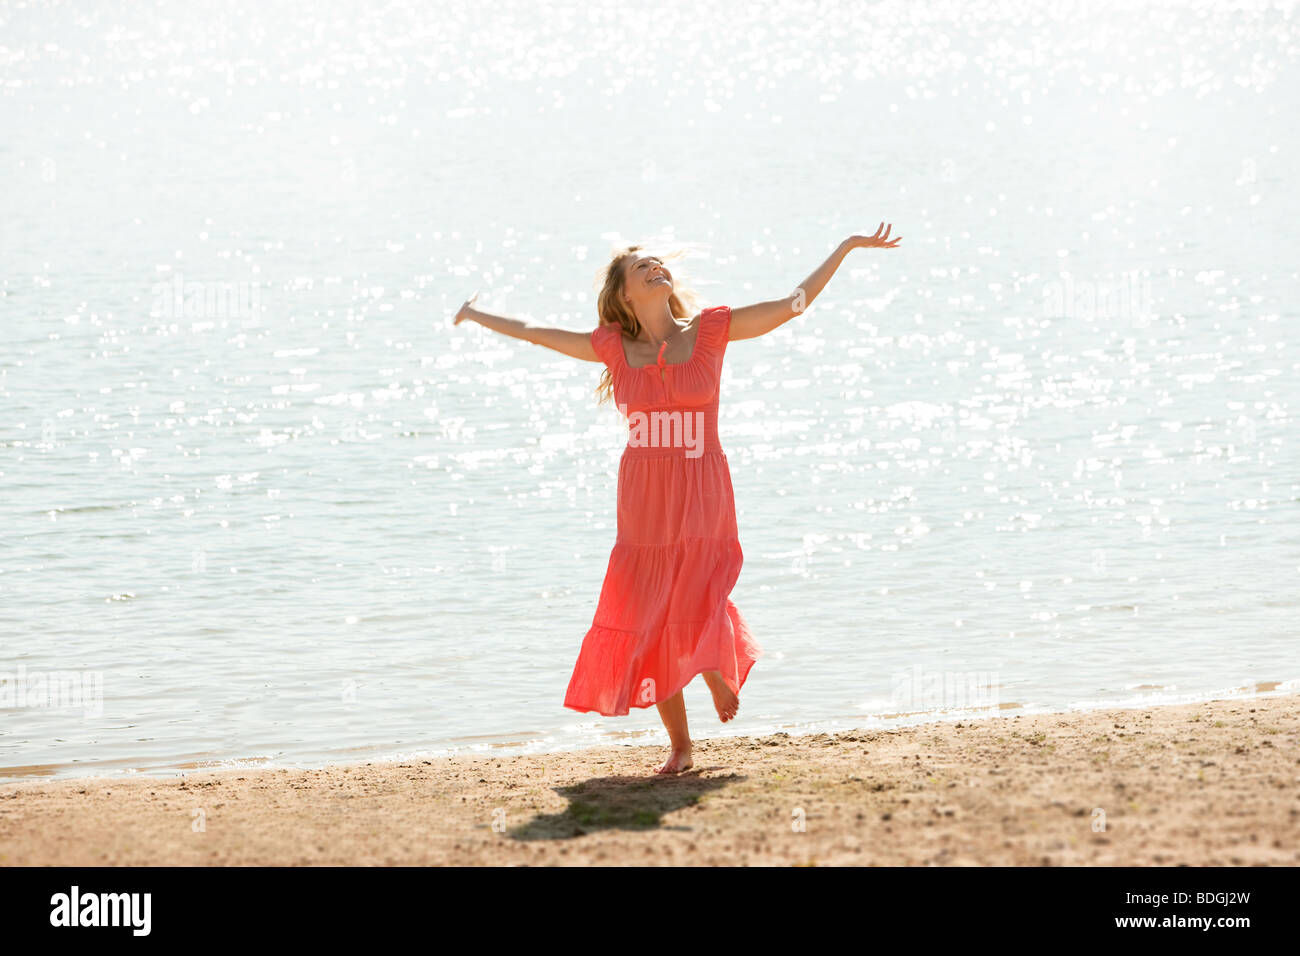 Un heureux , smiling woman danse sur une plage avec l'abandon, les bras tendus. Banque D'Images